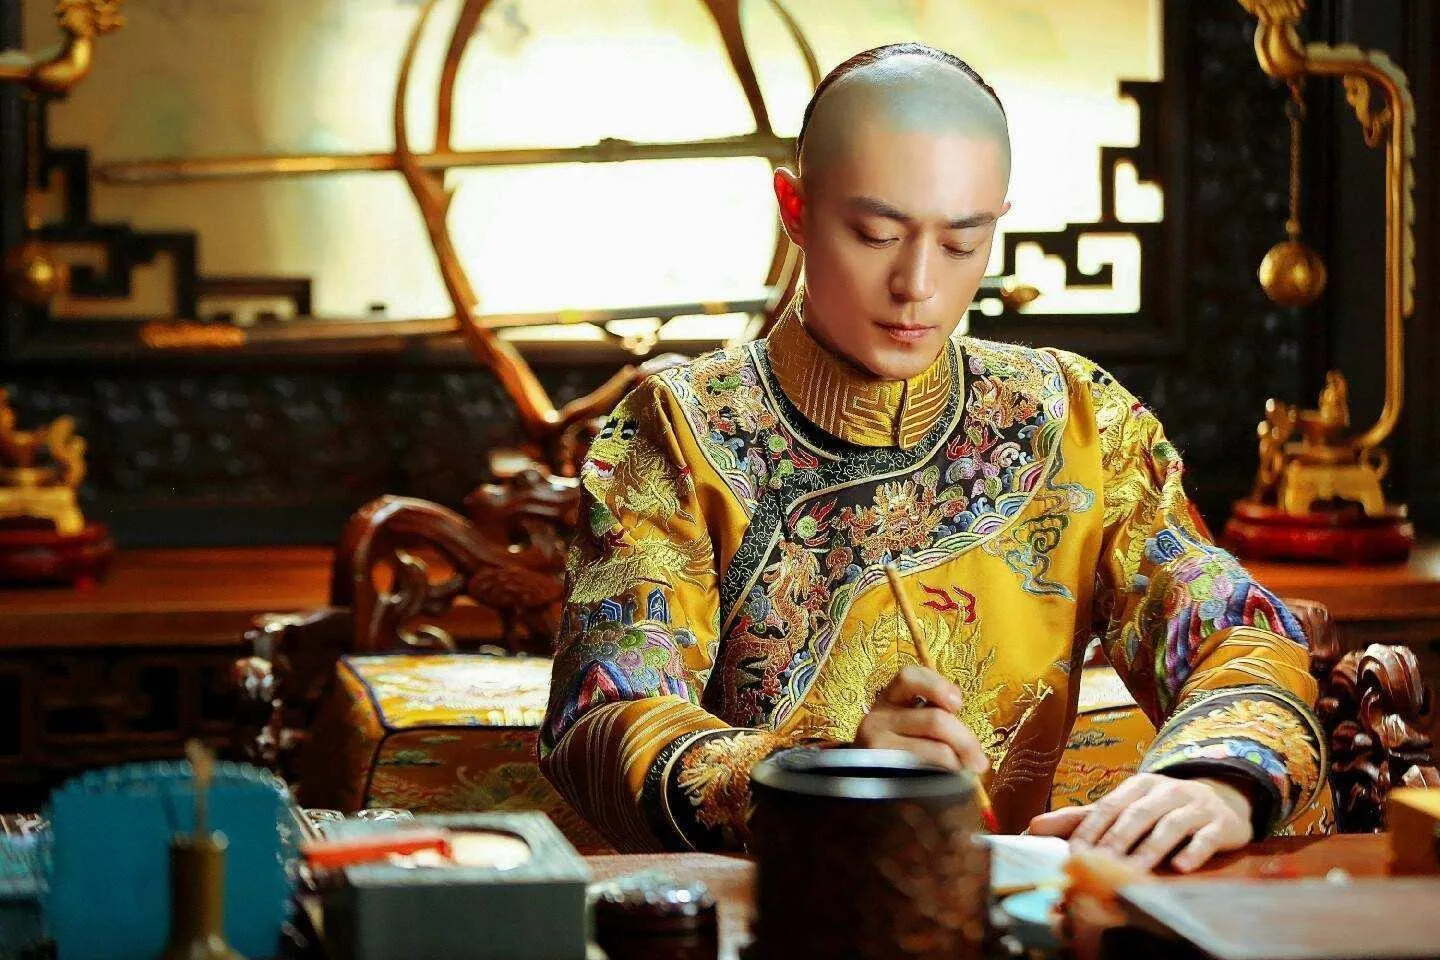 乾隆皇帝是哪个朝代的 | 乾隆是中国历史上最伟大君主吗